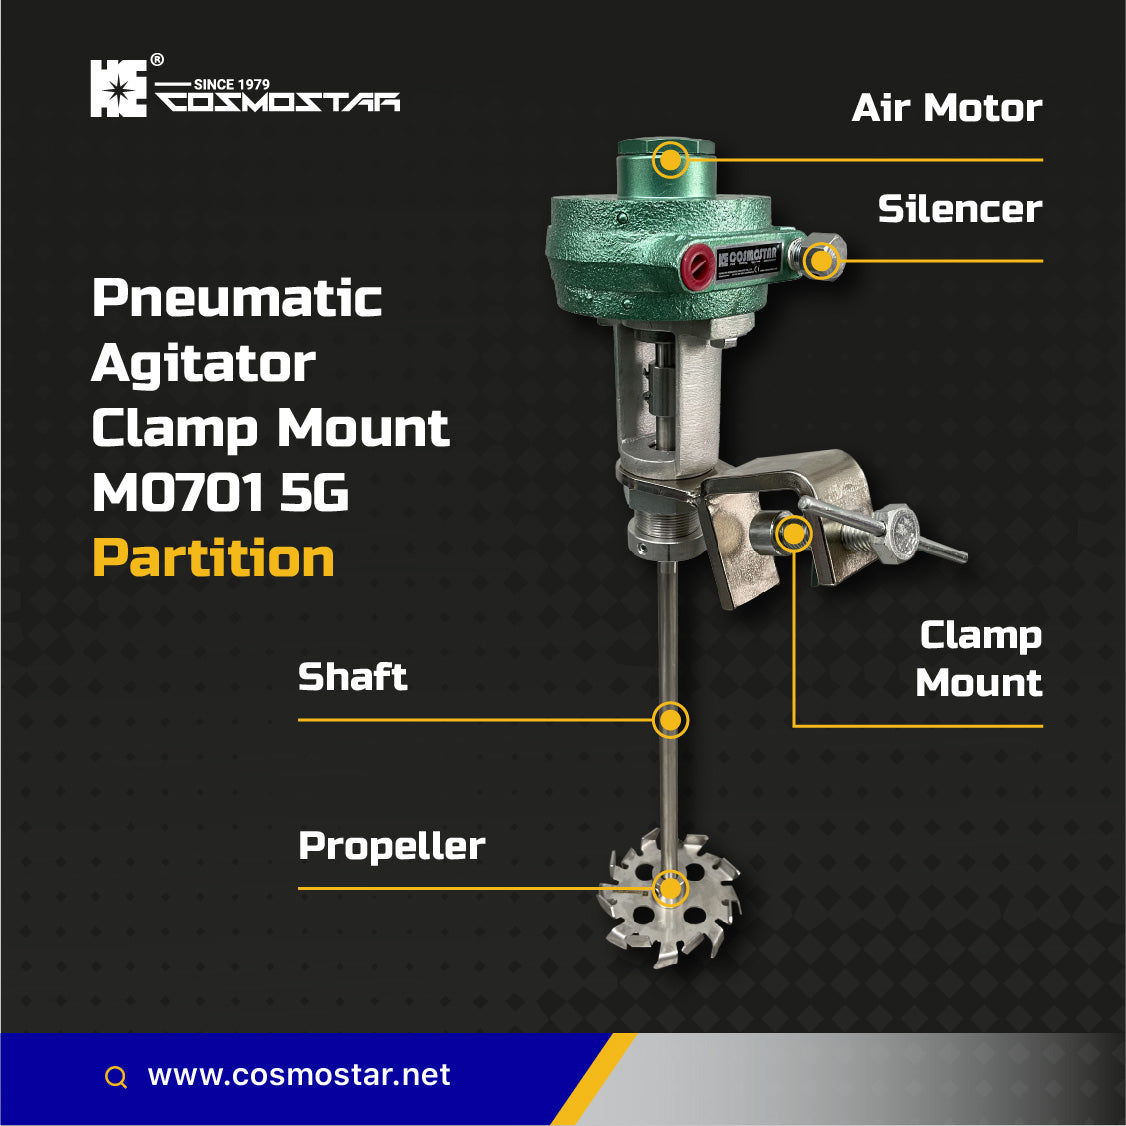 COSMOSTAR M0701 5 Gallon Pneumatic Agitator Clamp Mount Pail Mixer